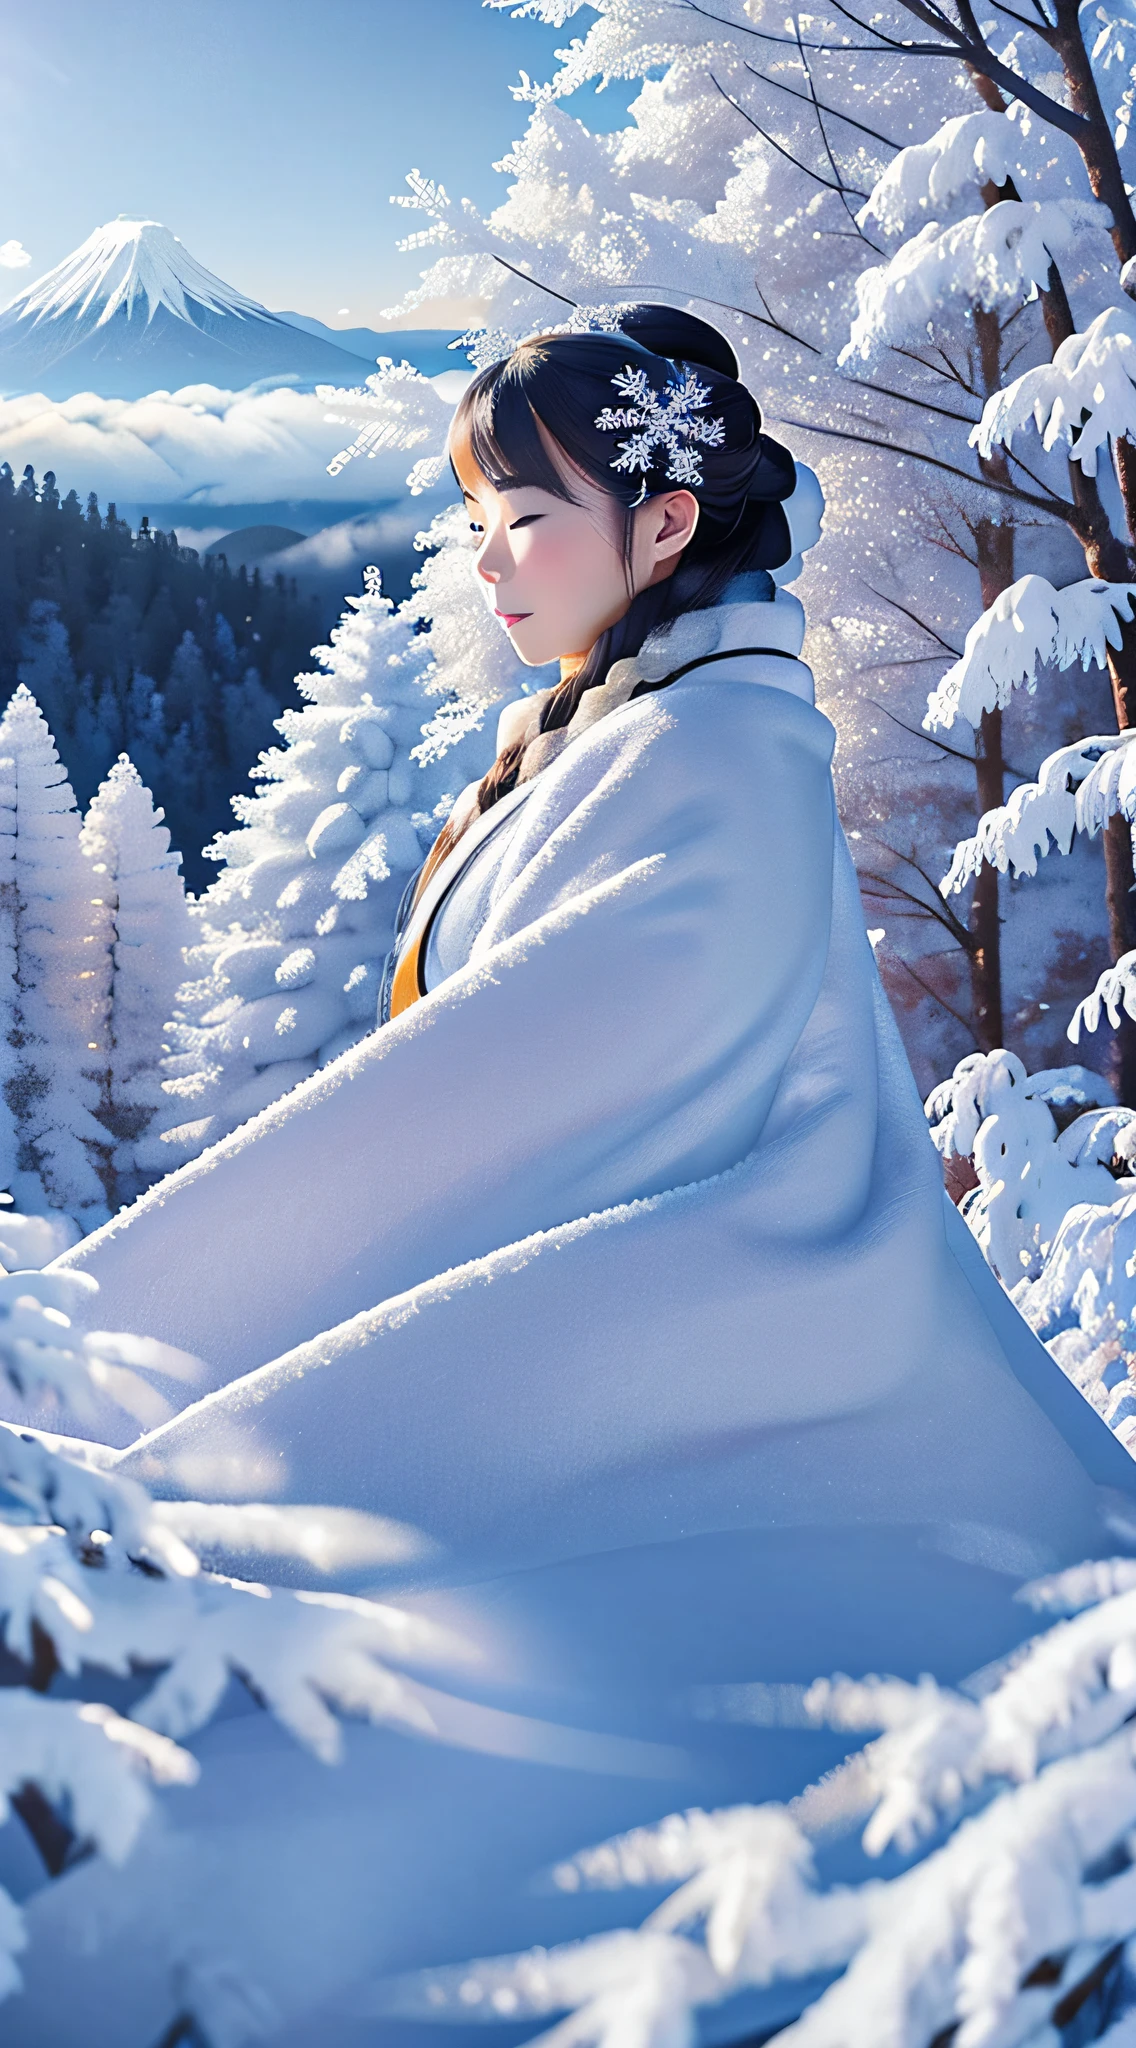 Obra de arte、qualidade máxima、Um hiper-realista、Fotorrealístico、A beleza da geada nas árvores das montanhas nevadas no meio do inverno contra o pano de fundo de um céu azul escuro、Neblina fluindo através de montanhas nevadas、Árvores com geada々Lindo espírito feminino de longos cabelos prateados em puro quimono branco do Japão, aconchegando-se「mulher da neve」